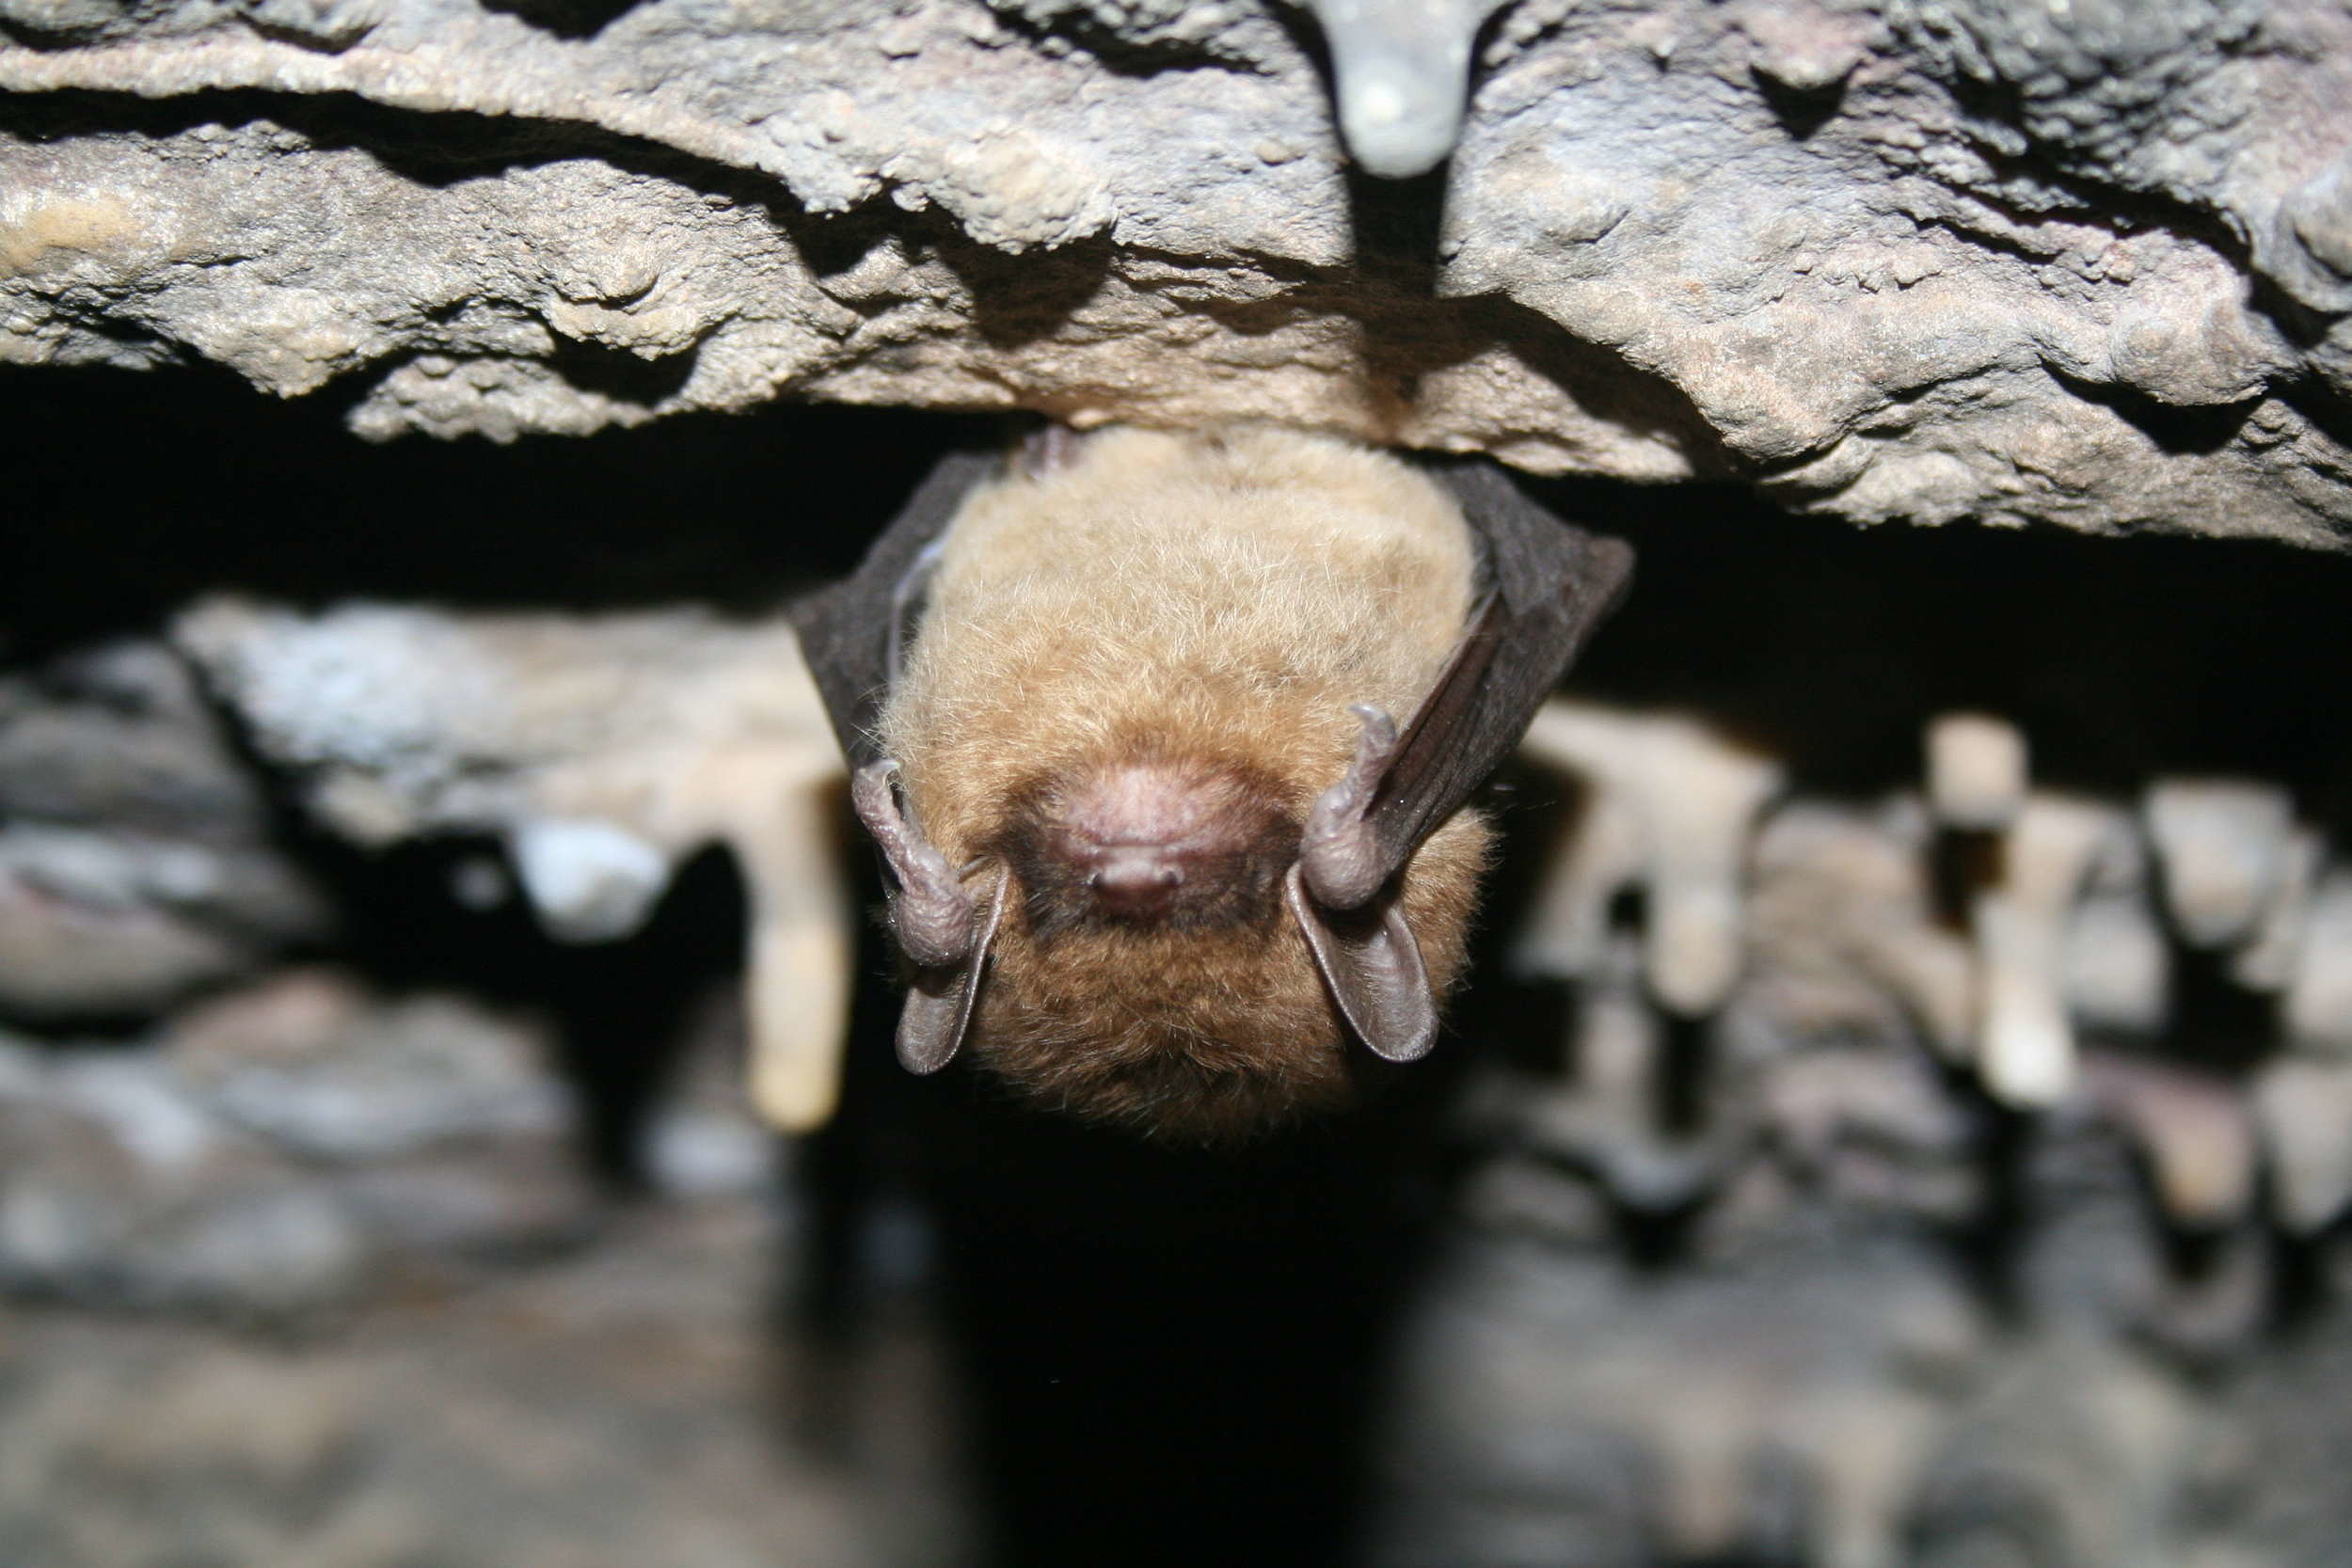 A little brown bat hangs upside down inside a cave. (photo © USFWS / Ann Froschauer)